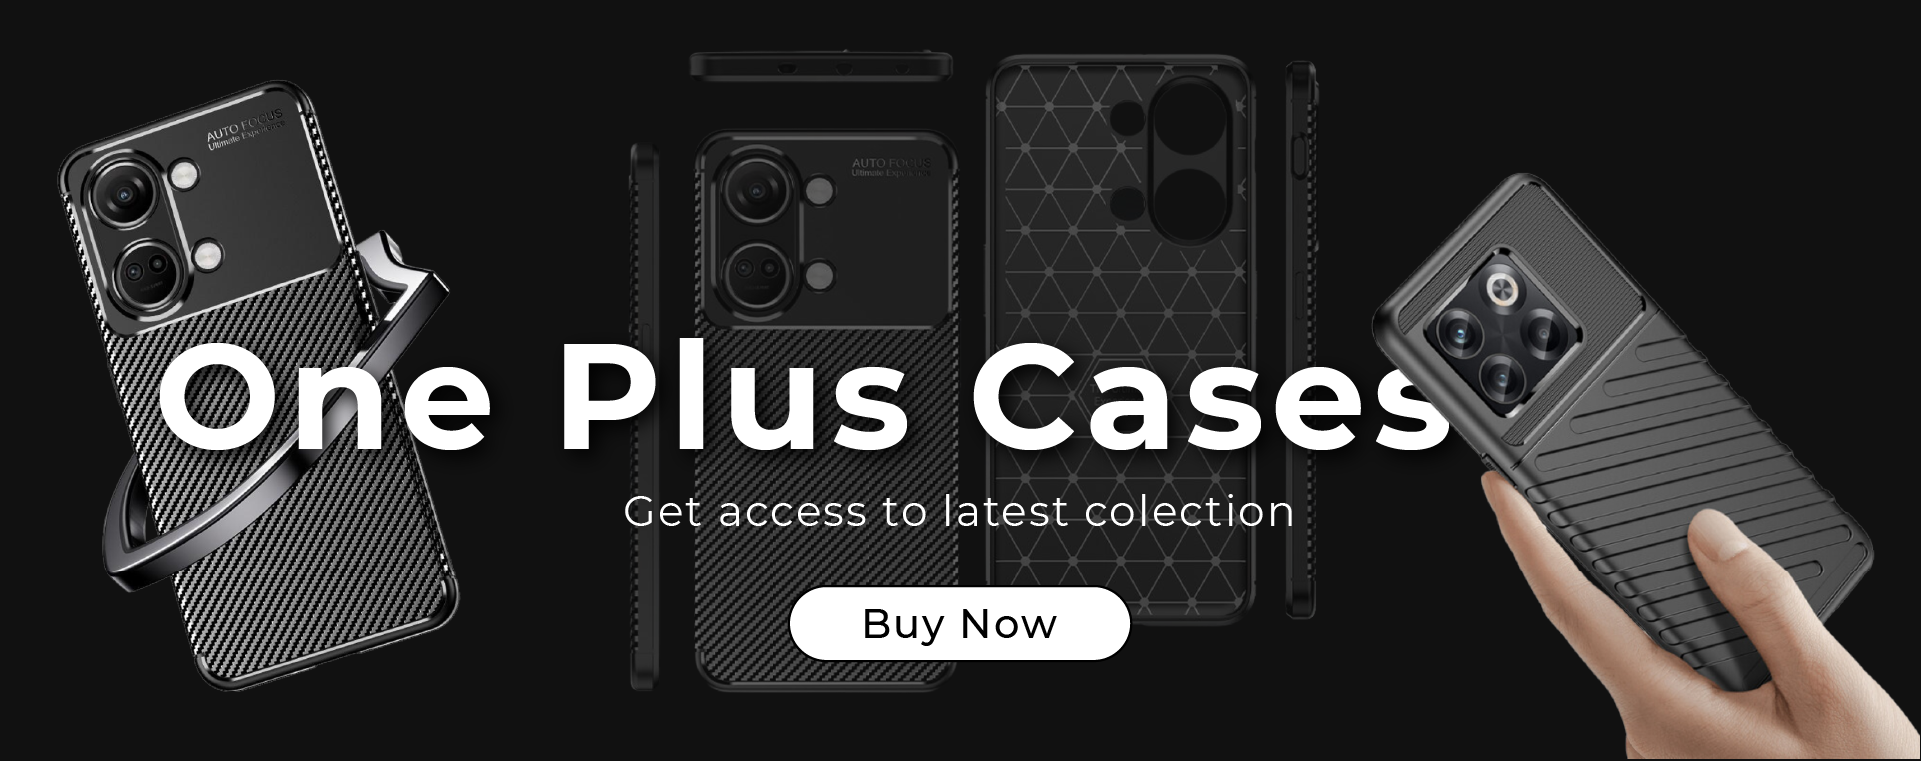 One Plus Cases